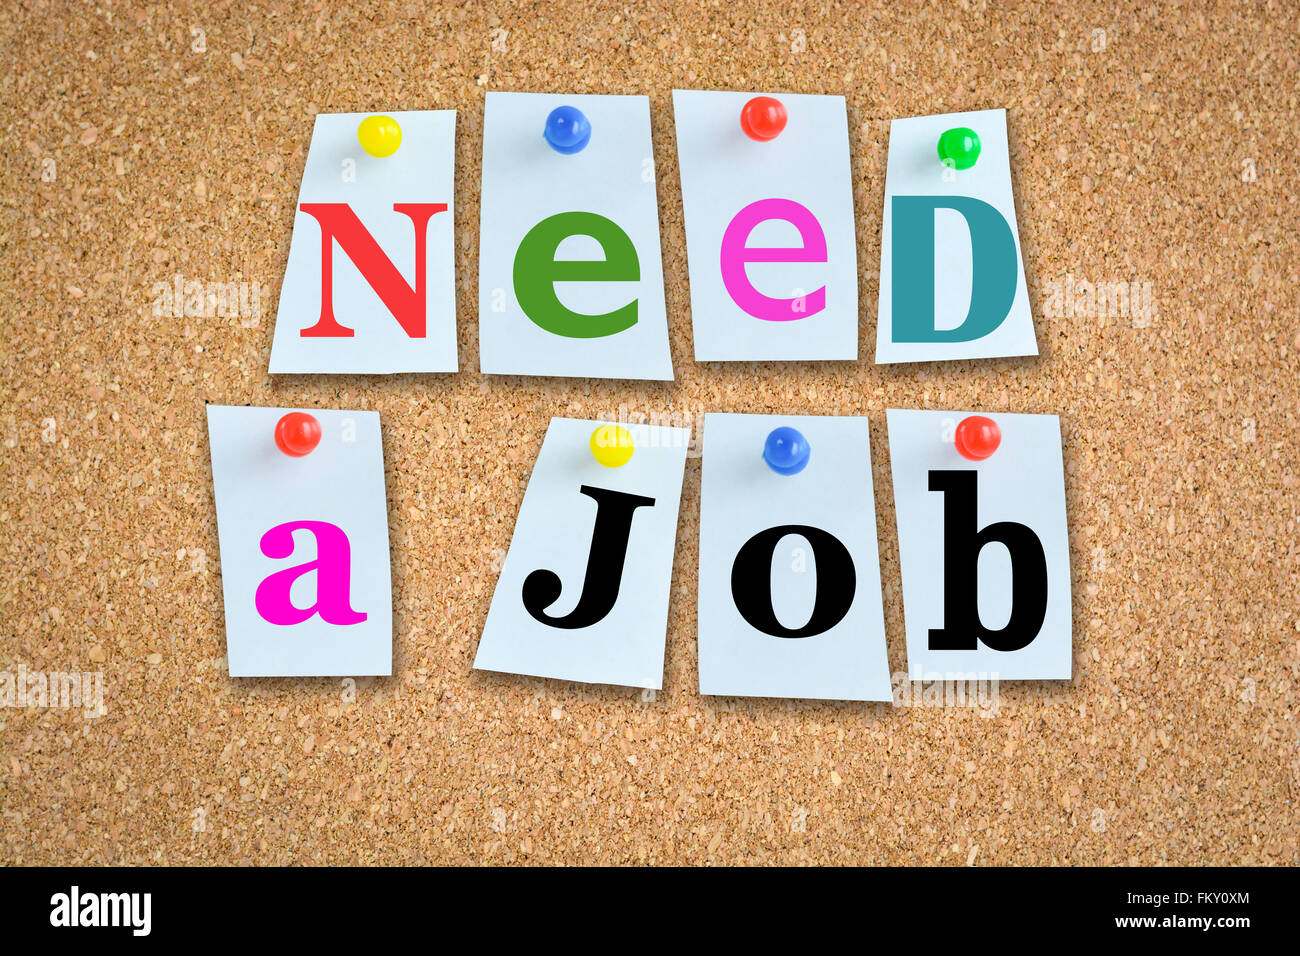 Jobs et carrières concept avec du papier coloré de broches sur billboard Banque D'Images